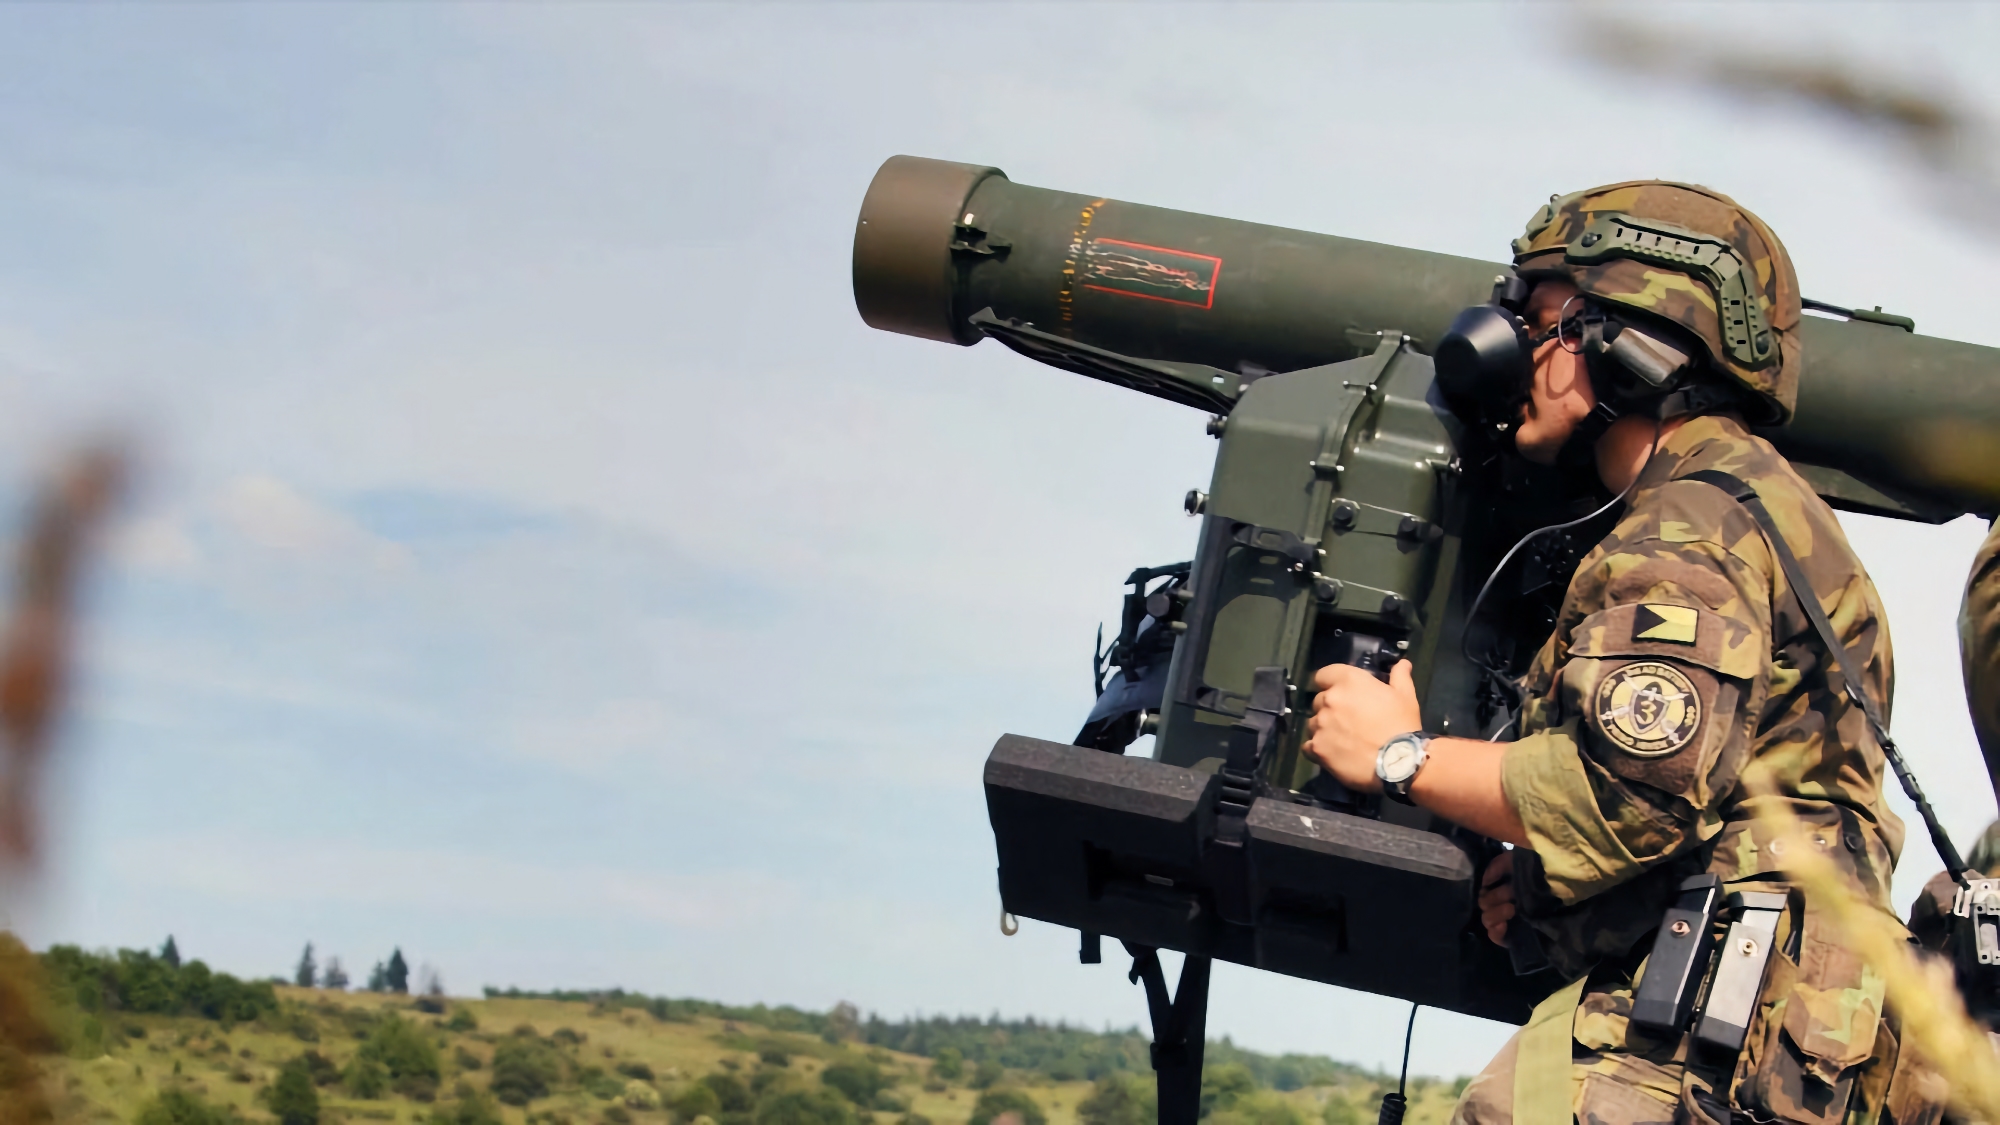 Le forze armate ucraine utilizzano sistemi di difesa aerea portatili svedesi RBS 70 con missili BOLIDE a guida laser al fronte